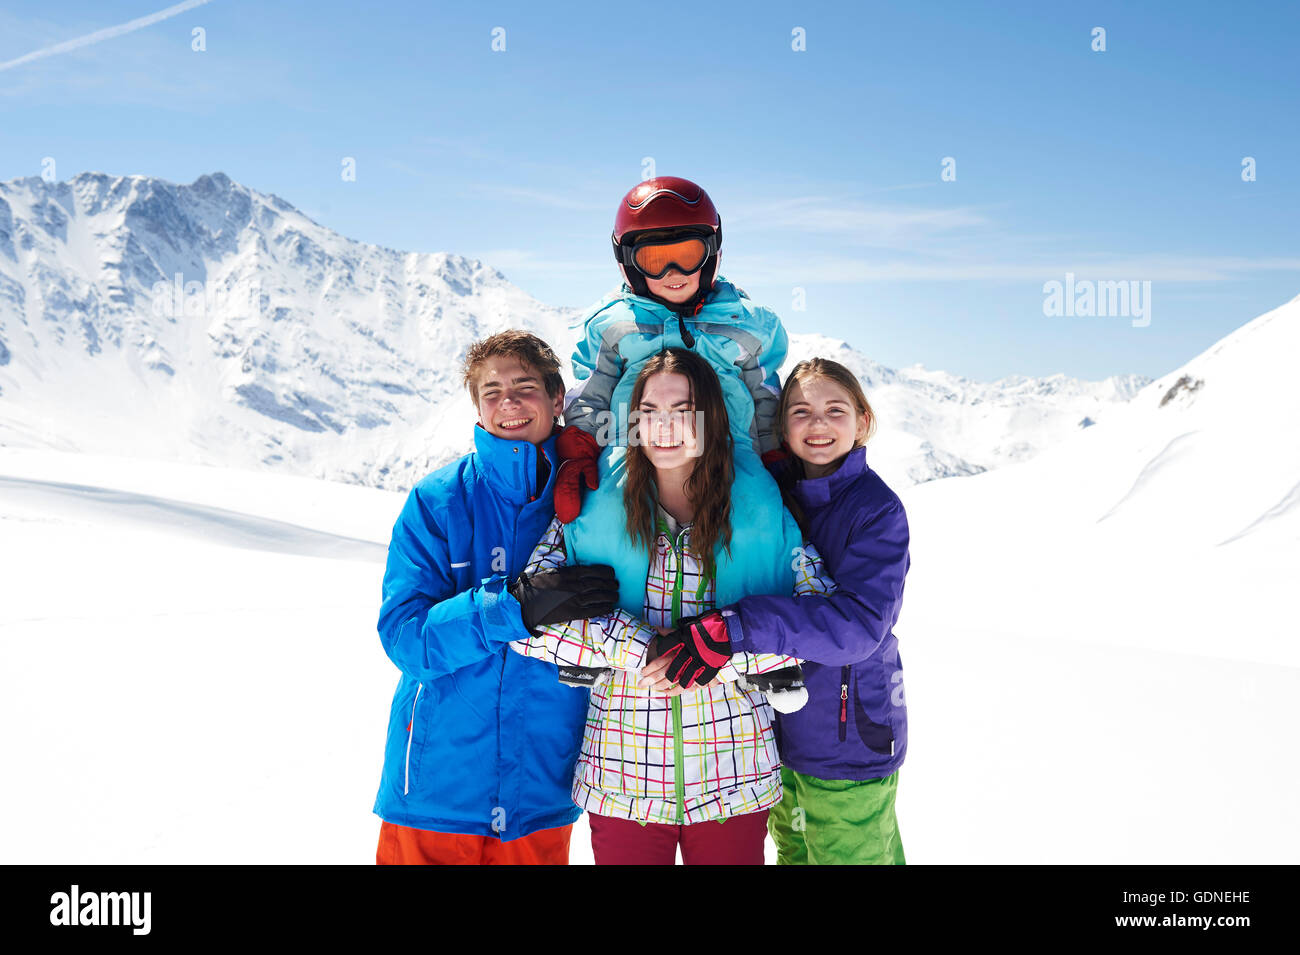 Portrait de quatre enfants portant des vêtements de ski Banque D'Images